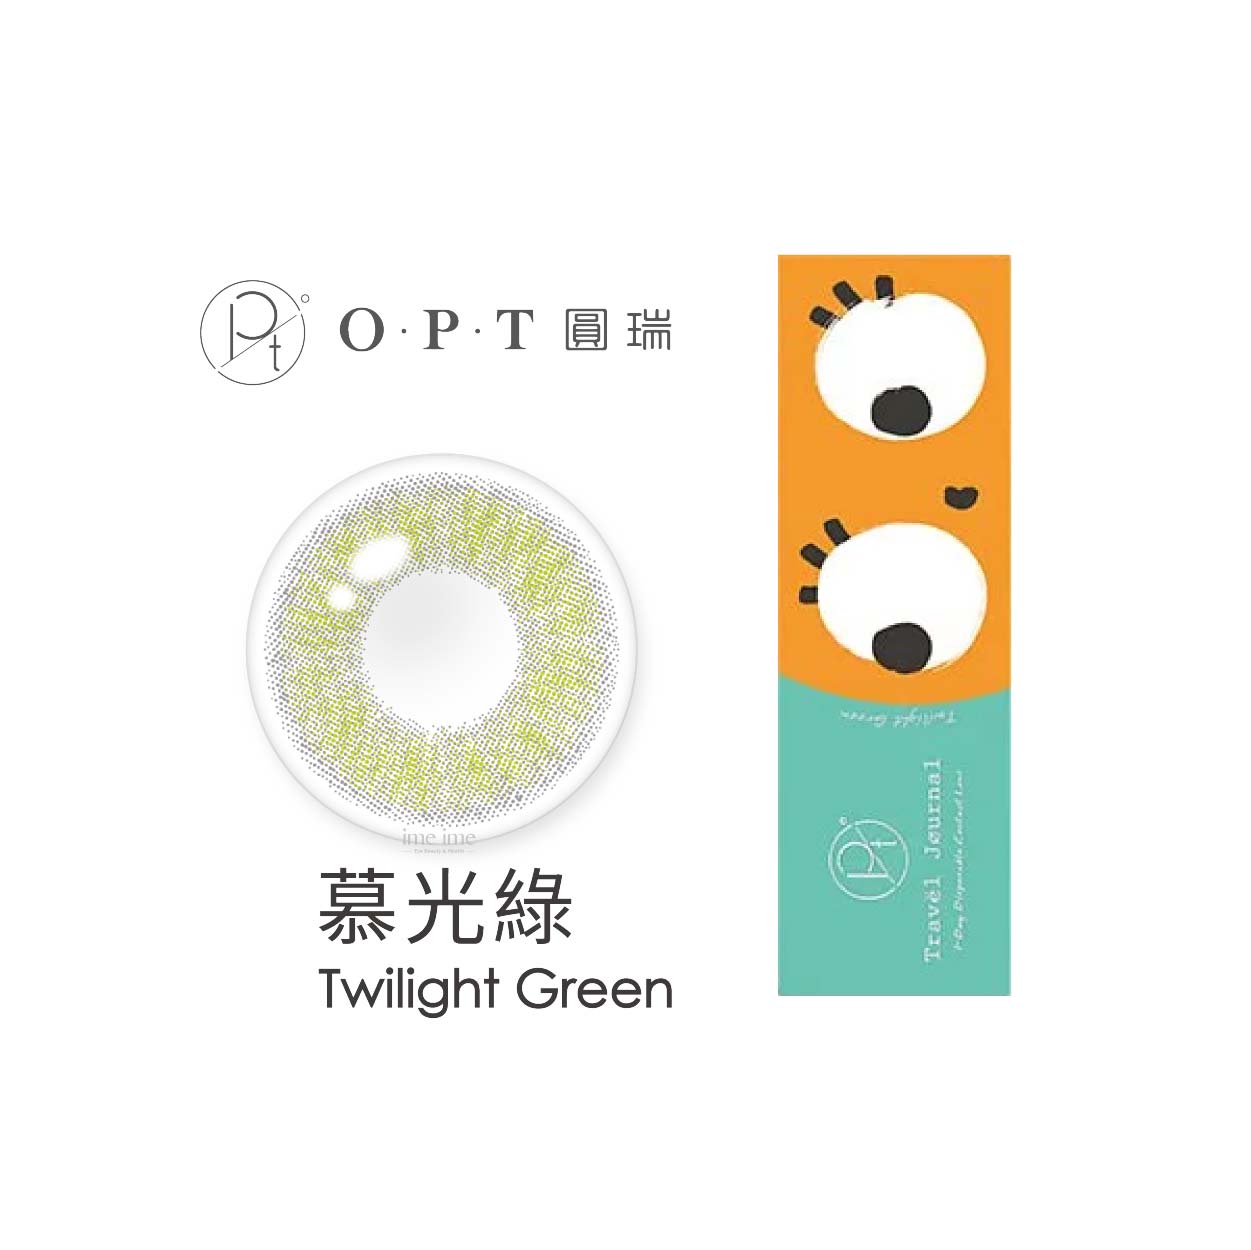 OPT旅行日記彩色日拋10片裝-Twilight Green慕光綠